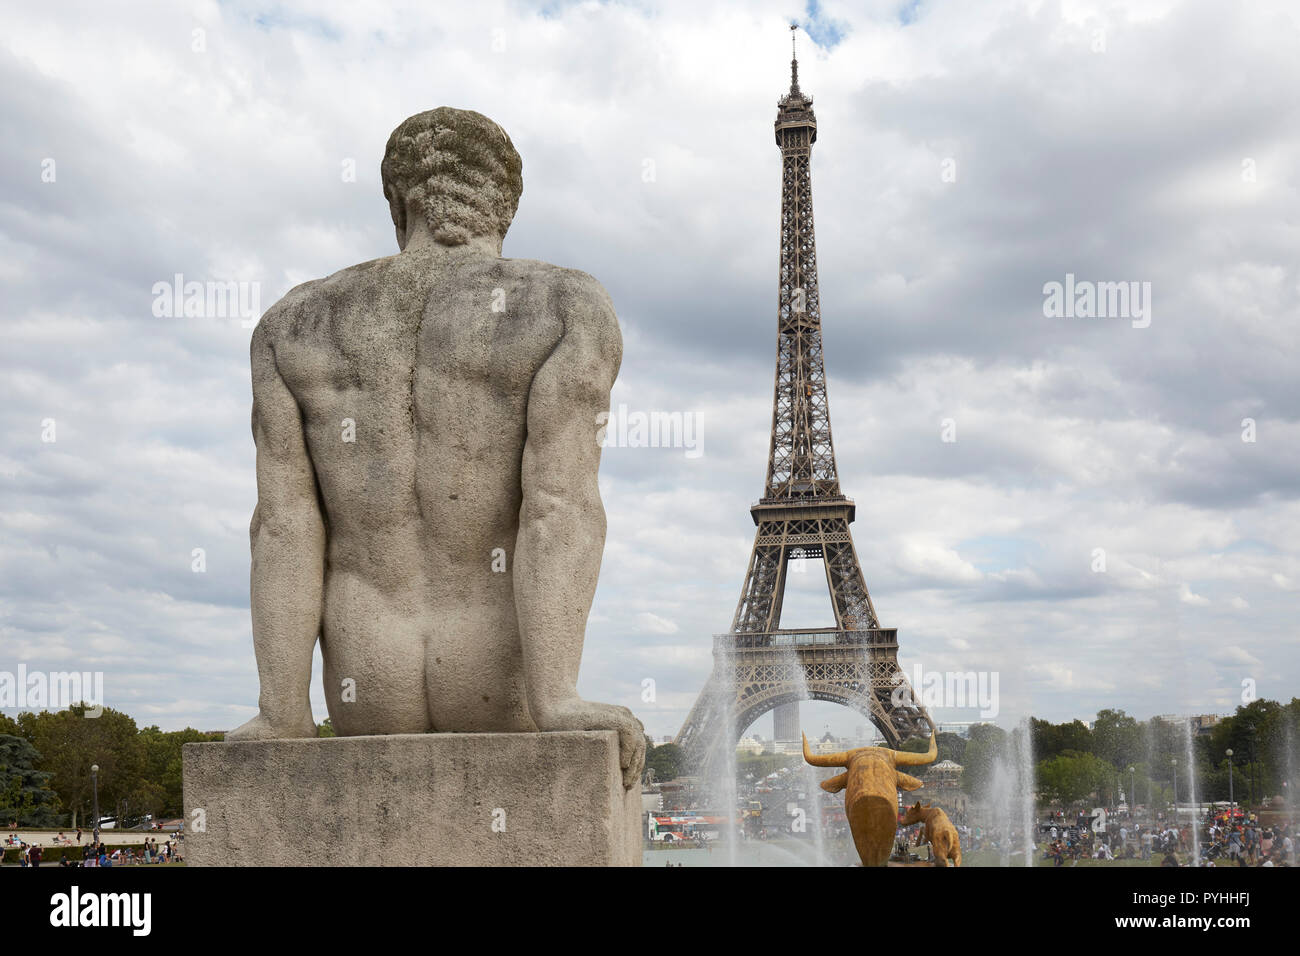 Paris, Ile-de-France, France - voir passé une sculpture en pierre d'un homme, à l'arrière des Jardins du Trocadéro, de la Tour Eiffel. Banque D'Images